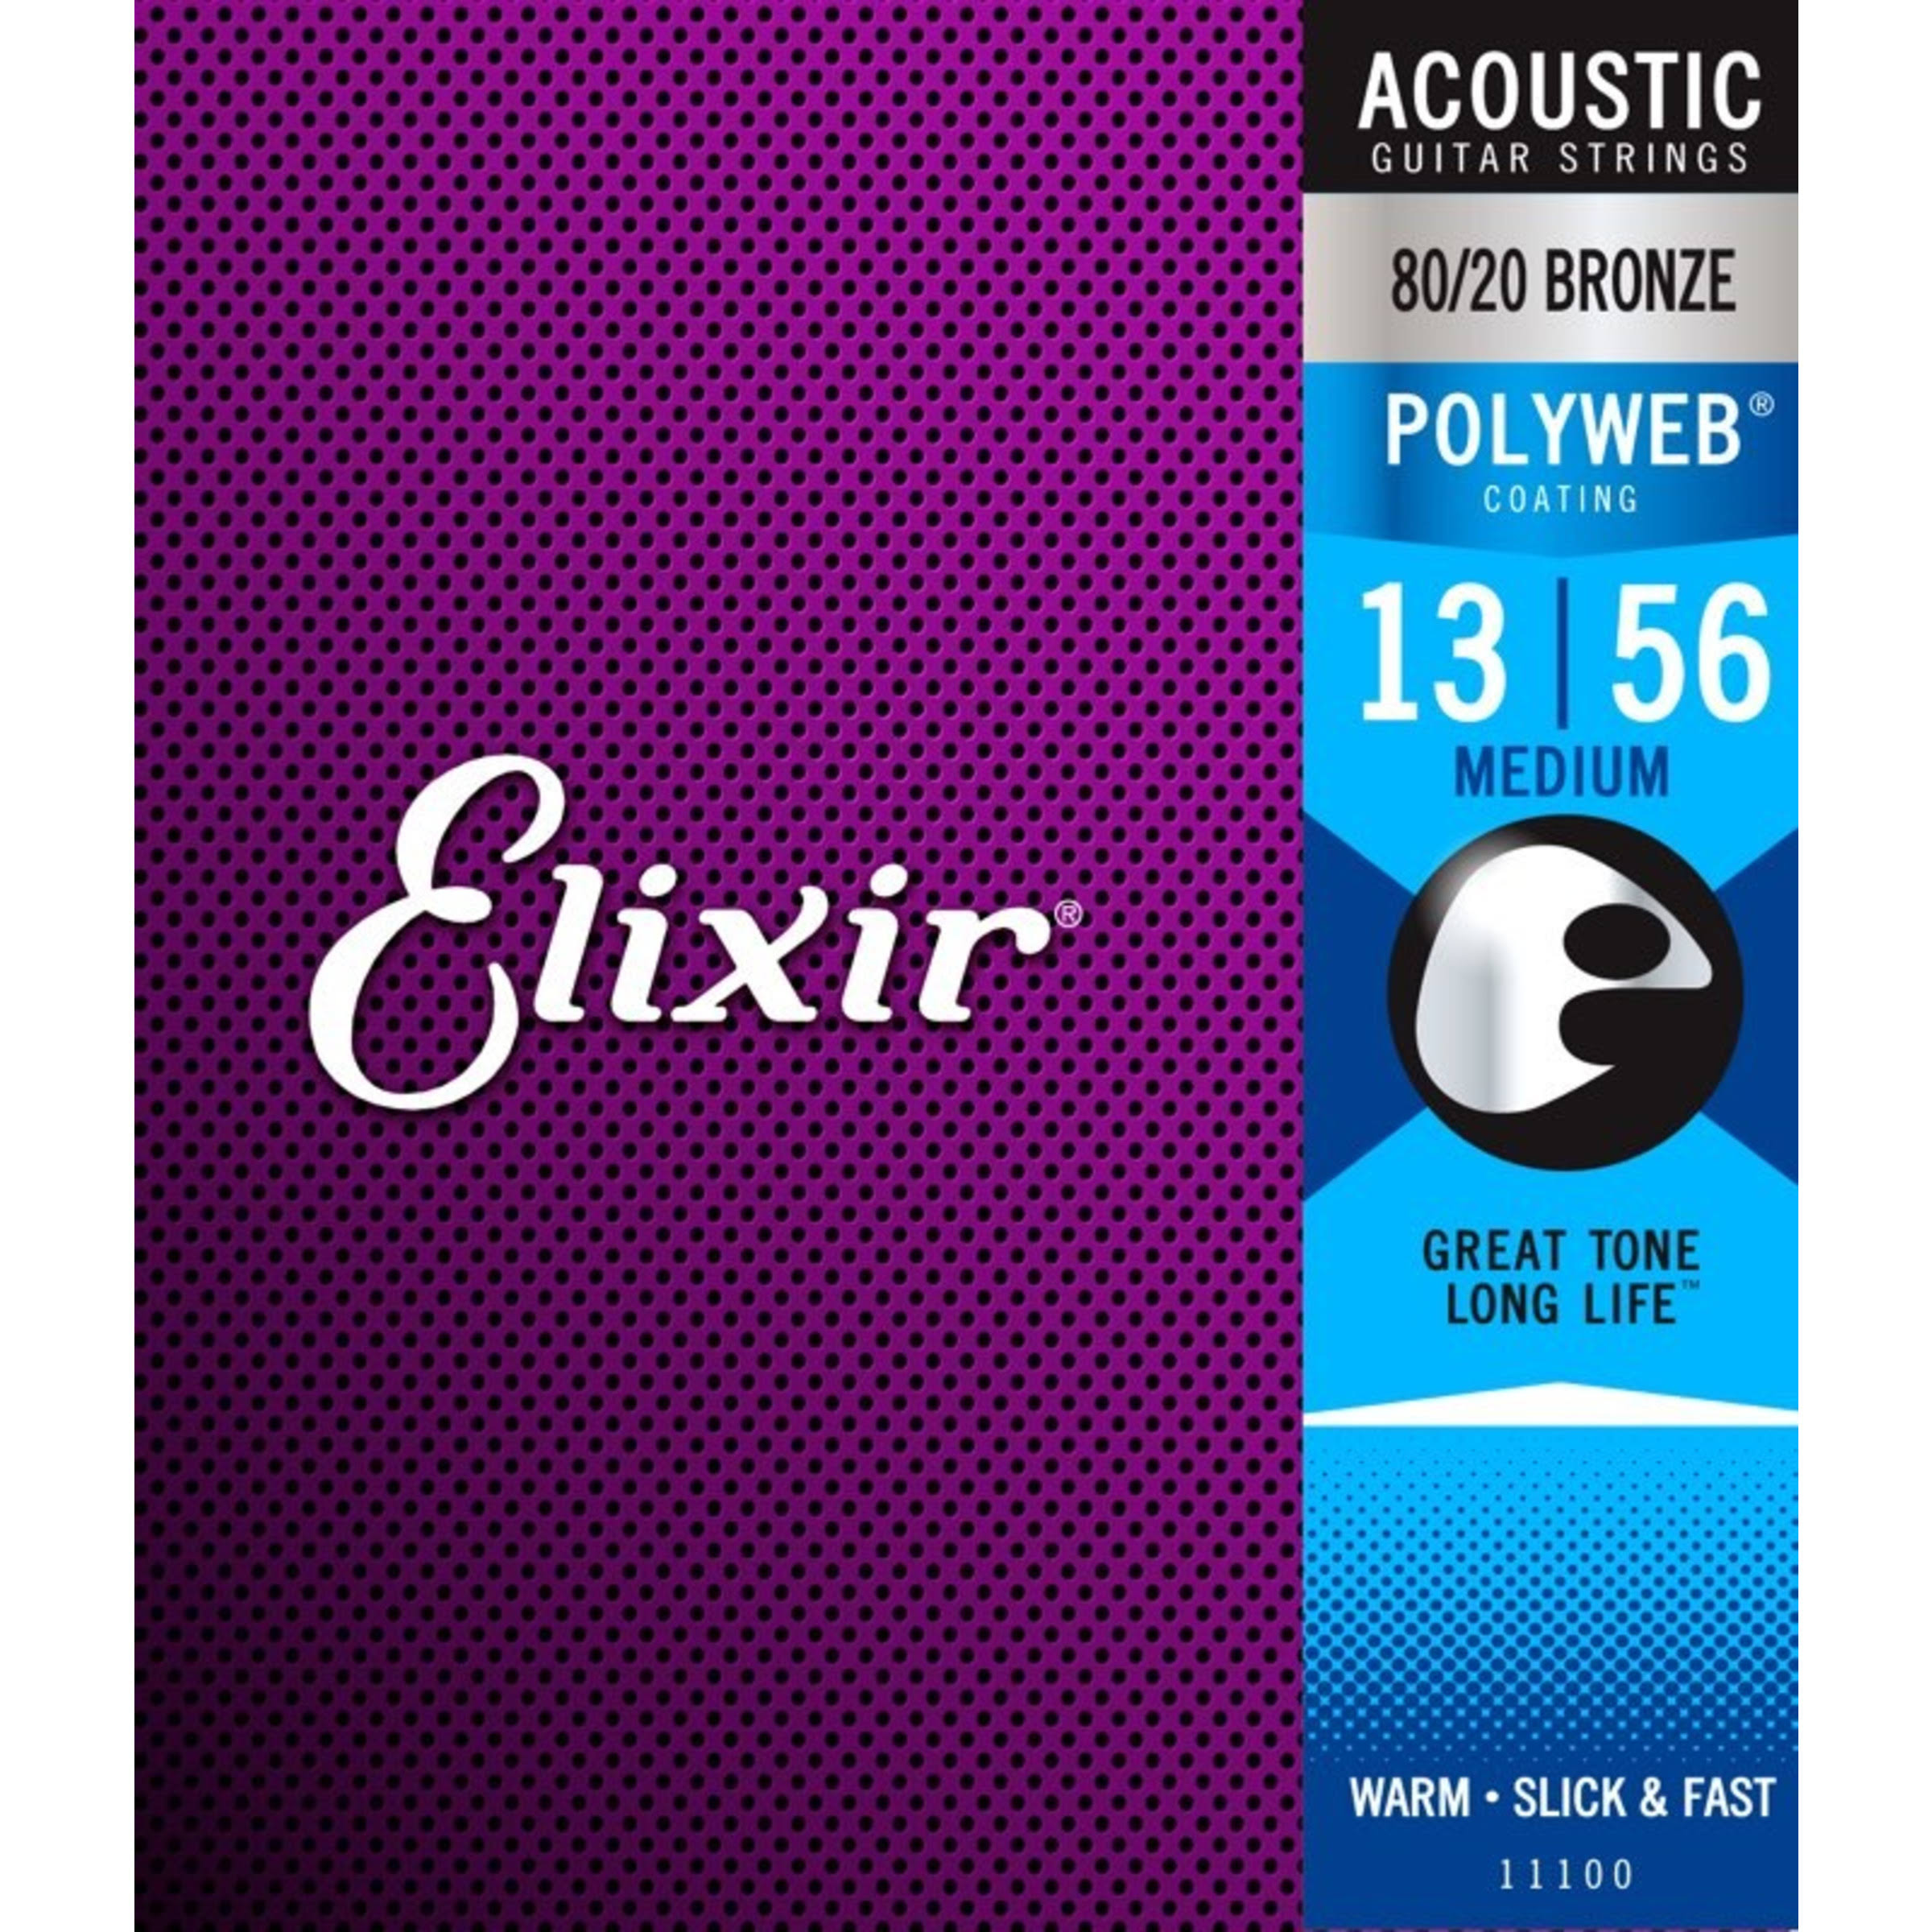 Elixir Strings Acoustic Guitar Strings - 6-String, Medium Nanoweb Coating